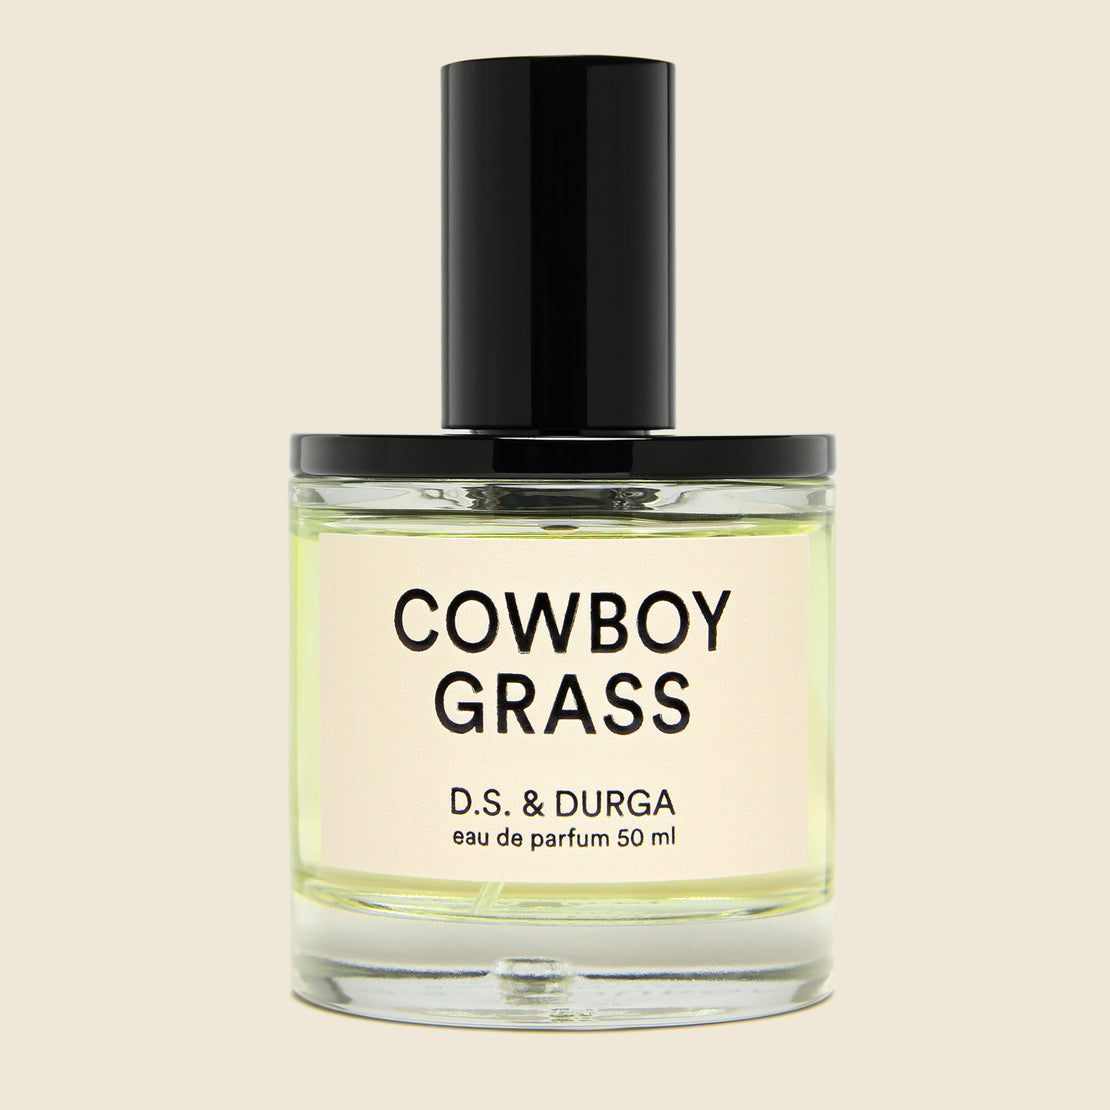 Cowboy Grass Eau de Parfum - D.S. & Durga - STAG Provisions - Home - Chemist - Cologne